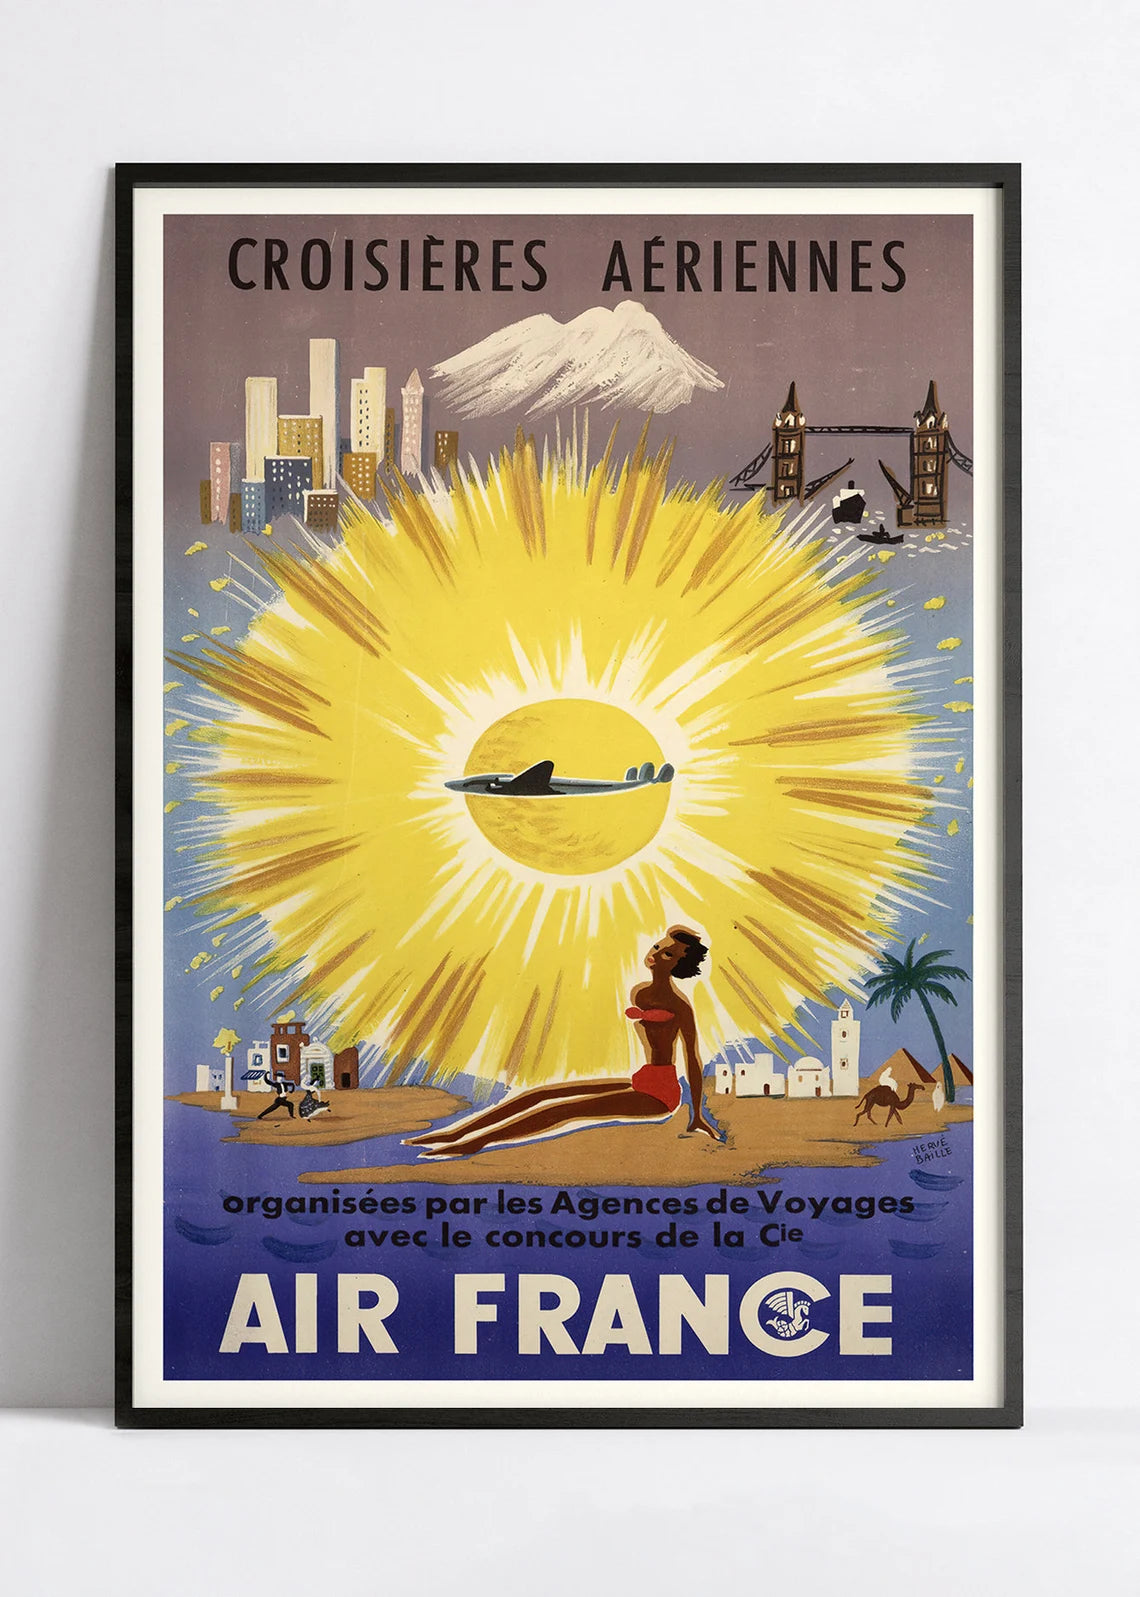 Affiche Air France "Croisières aériennes" - Hervé Baille - Haute Définition - papier mat 230gr/m2